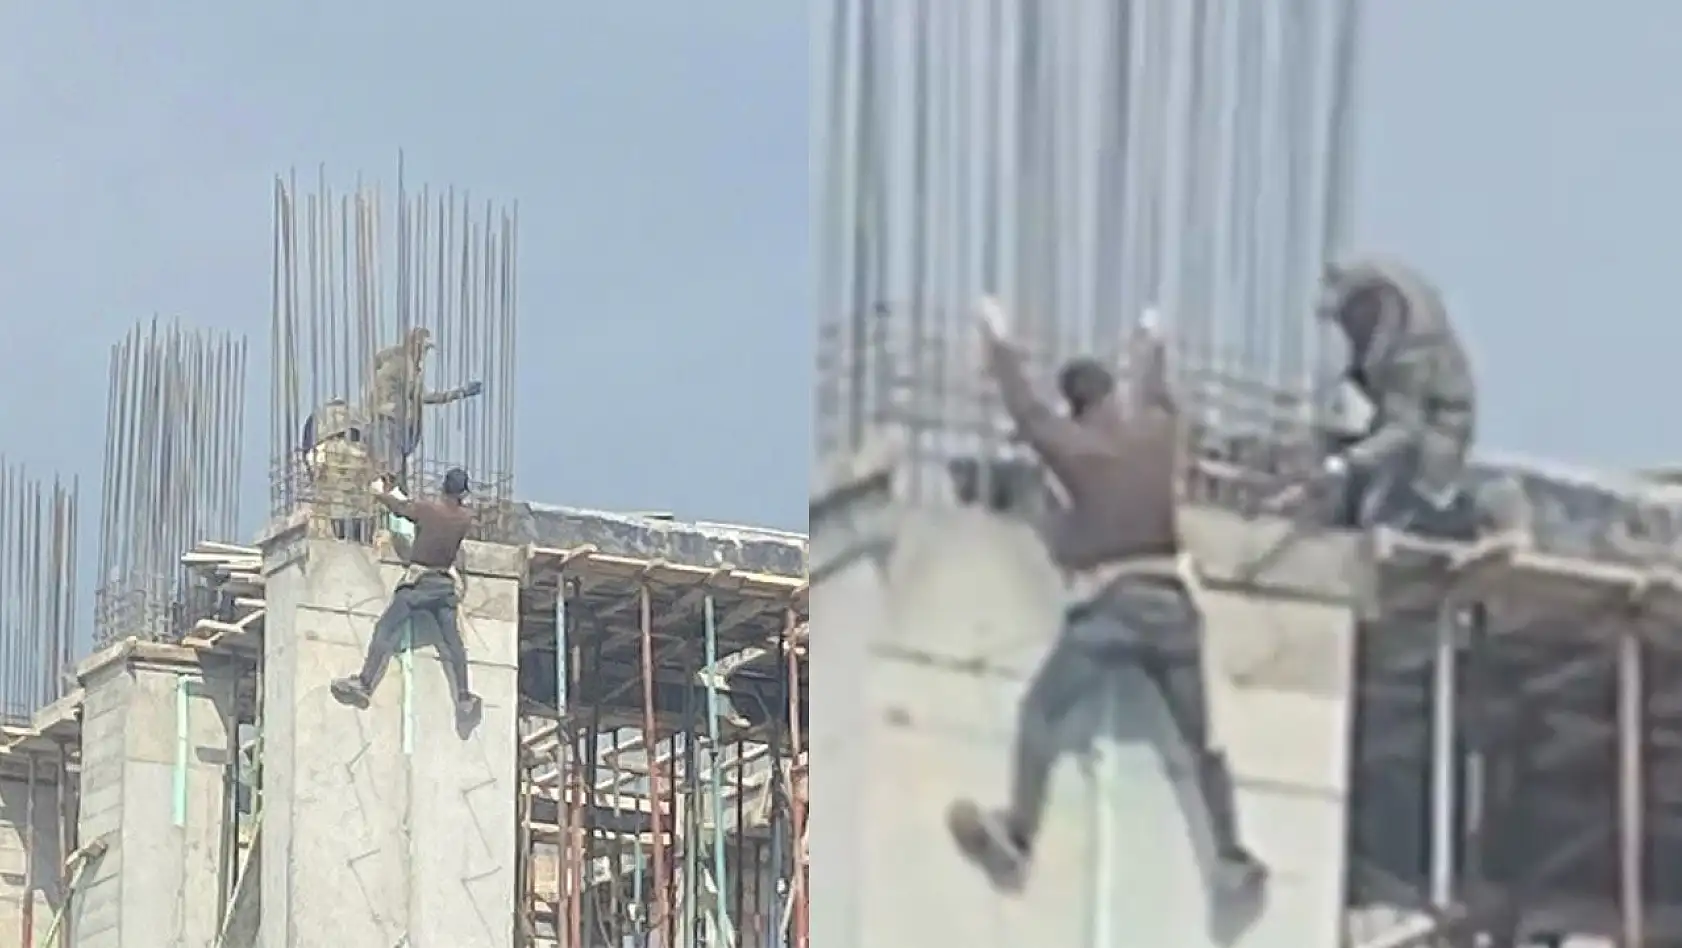 Elazığ'da Örümcek Adam'ı Andıran İşçi Kamerada